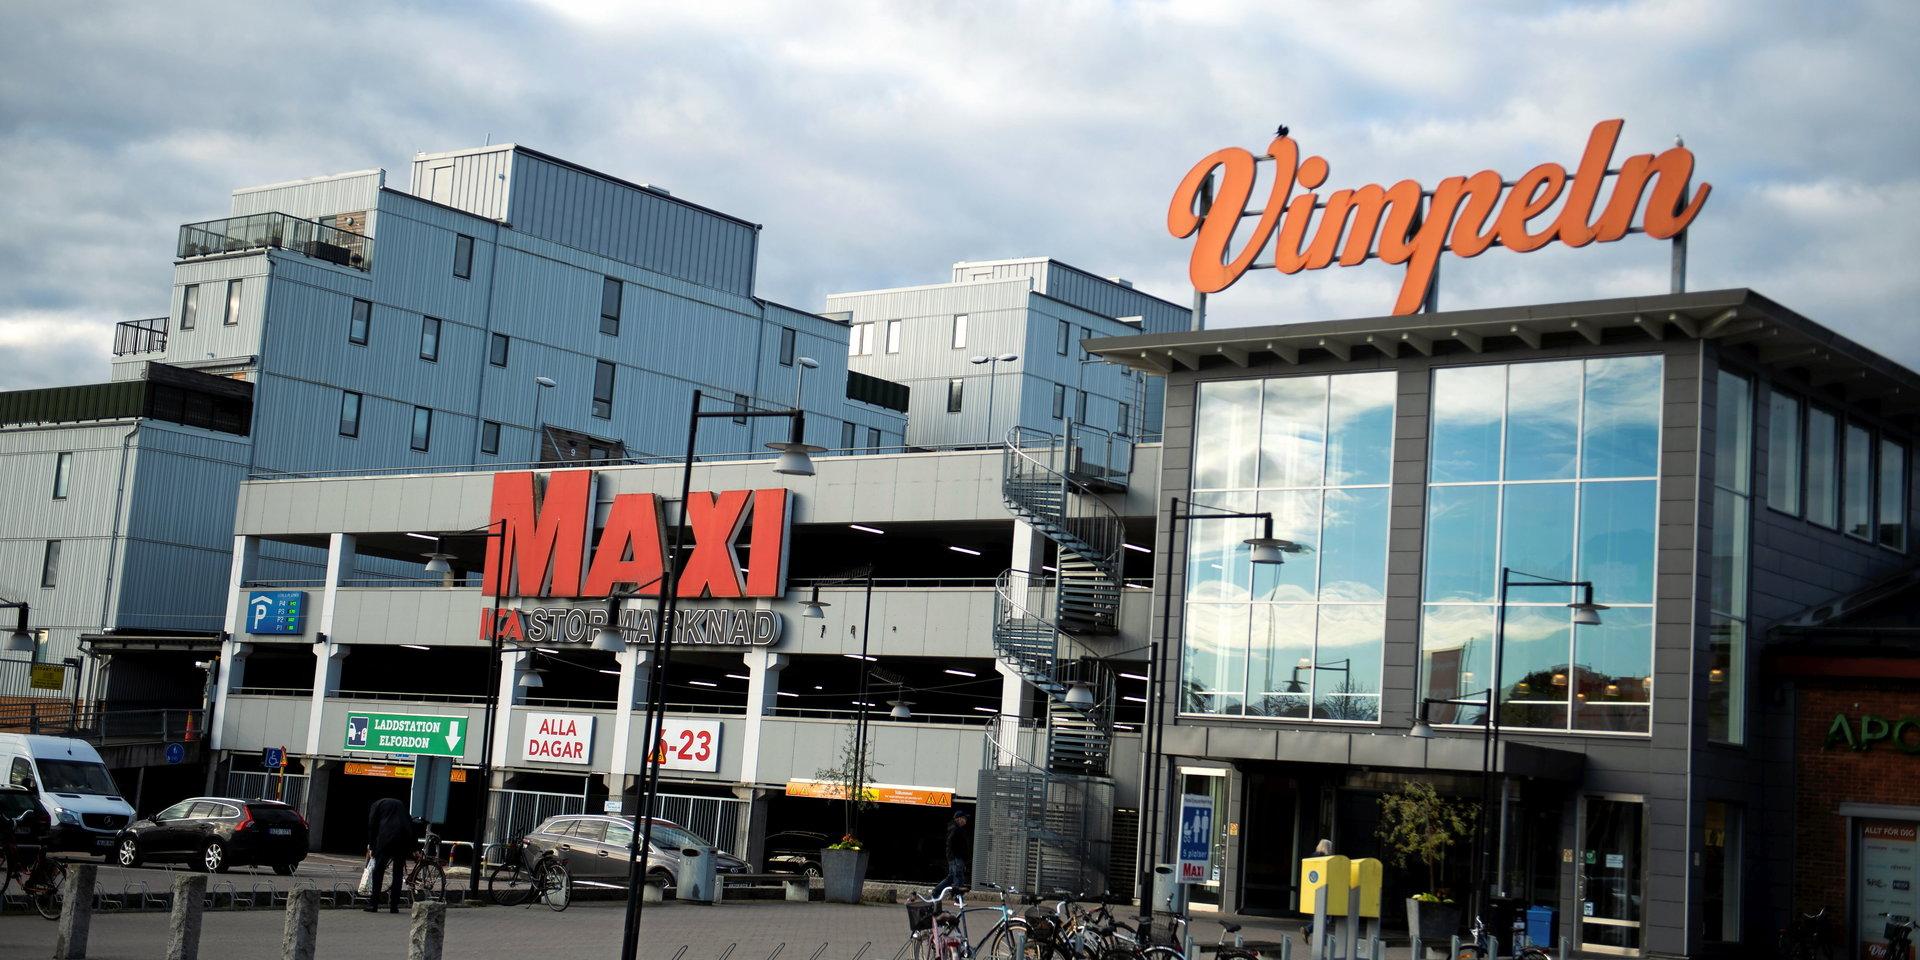 Vimpelns köpcenter påverkas av det pågående strömavbrottet i Alingsås, uppger GT.